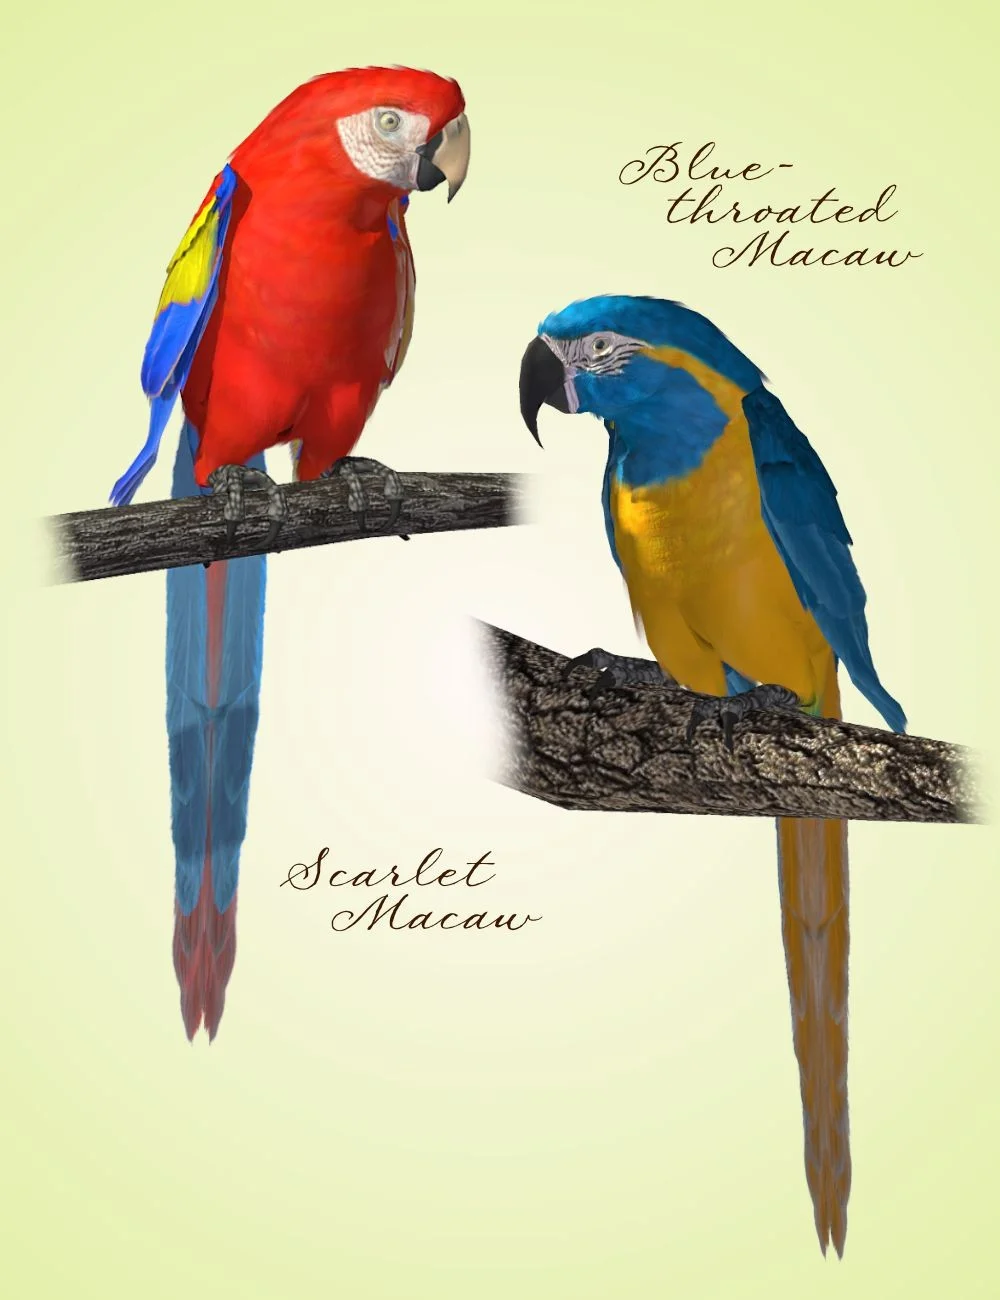 SBRM Parrots Vol 2 - Macaws of the World